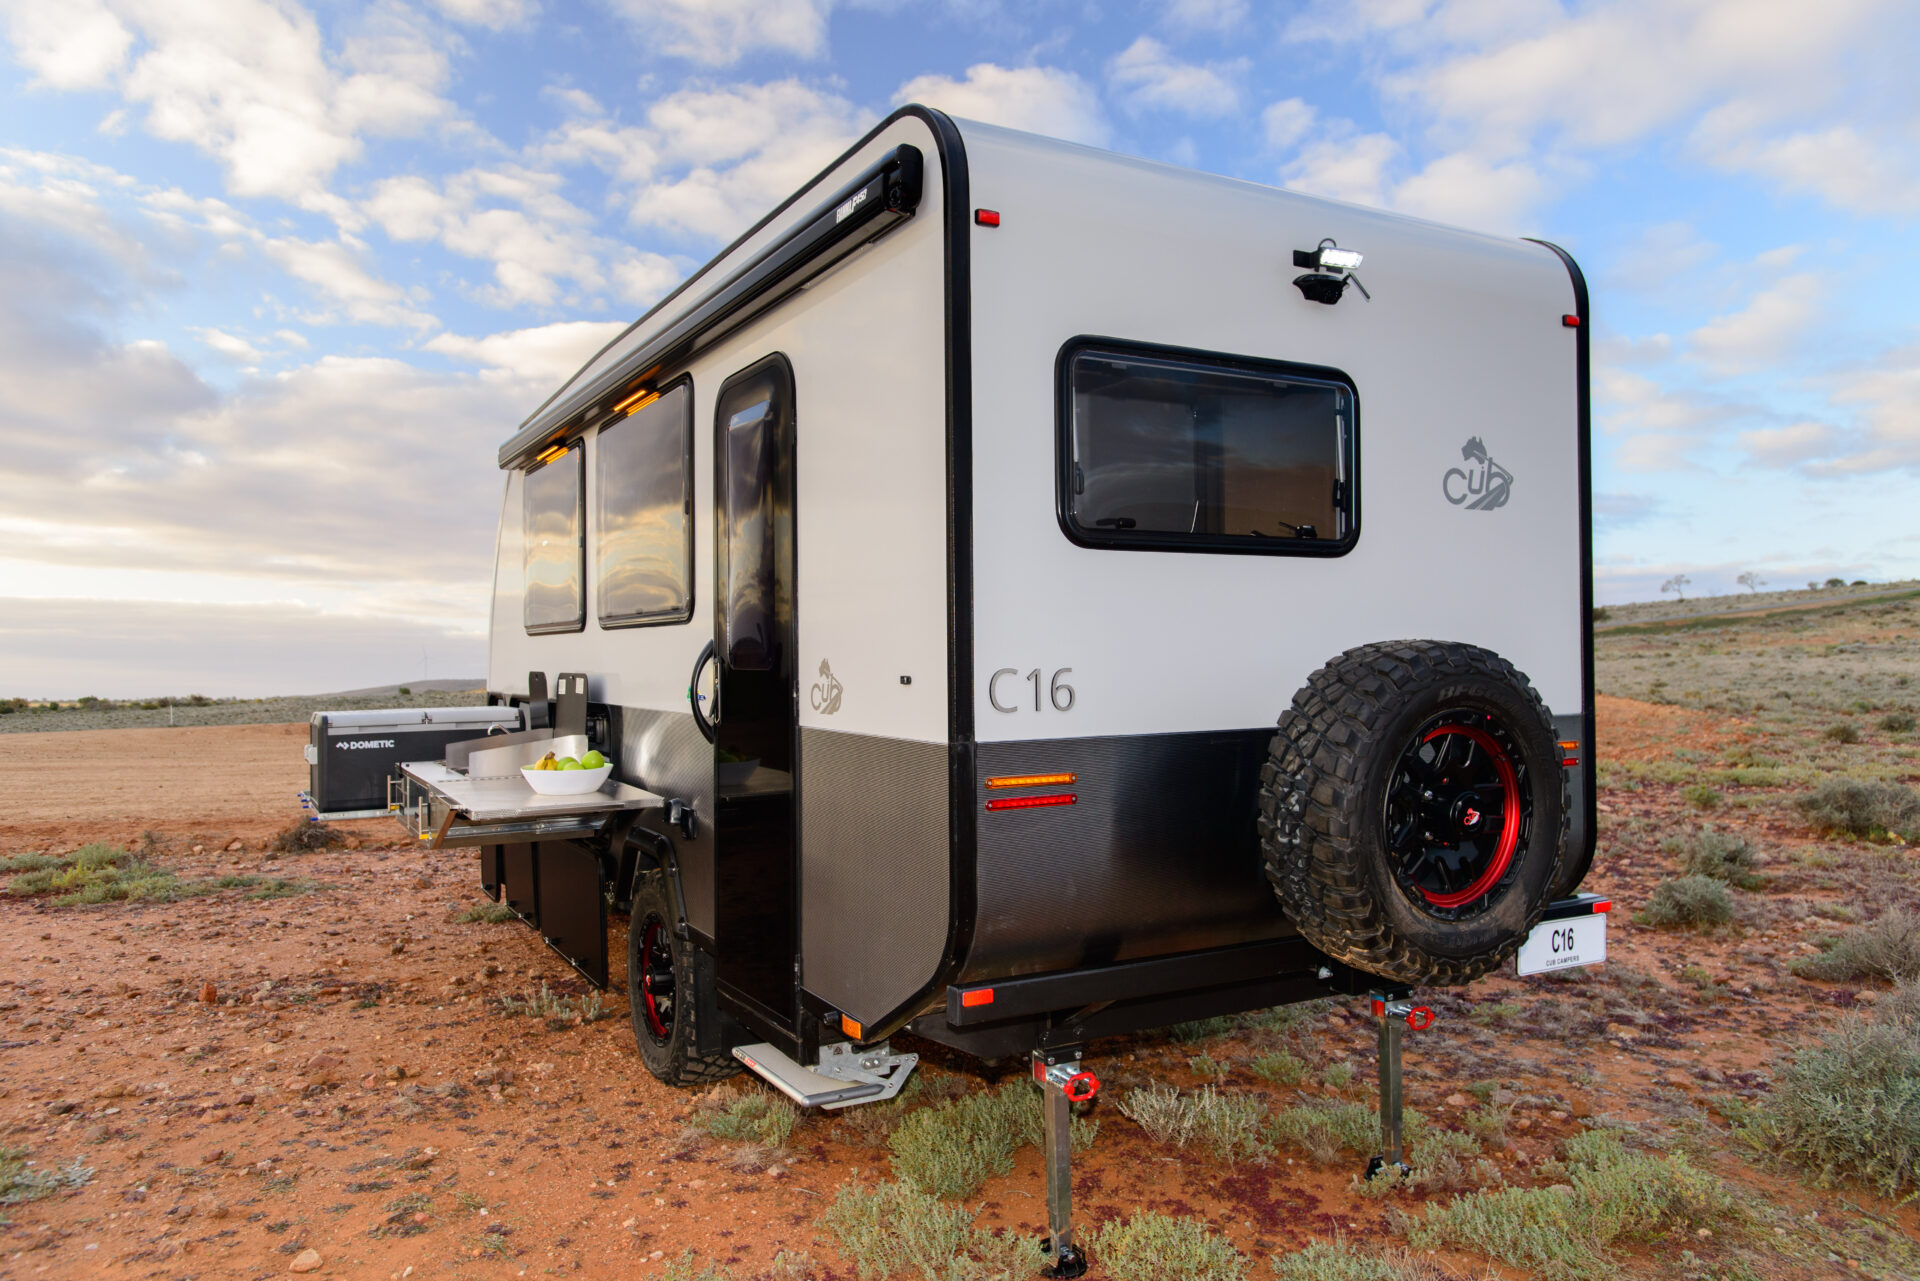 Essential Caravans - Built for life